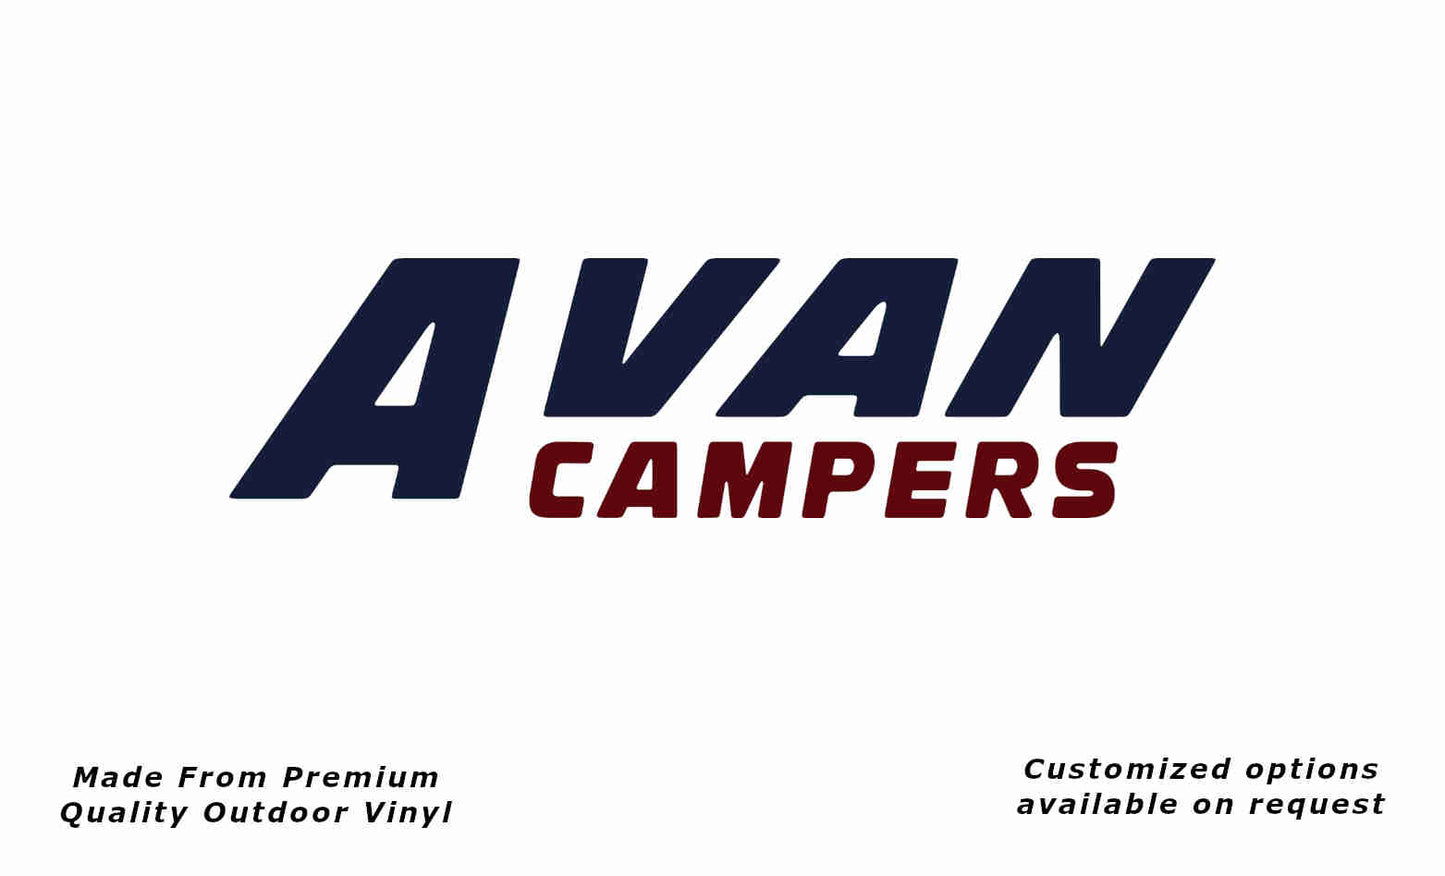 Avan campers caravan replacement vinyl decal sticker in deep sea blue and purple red.